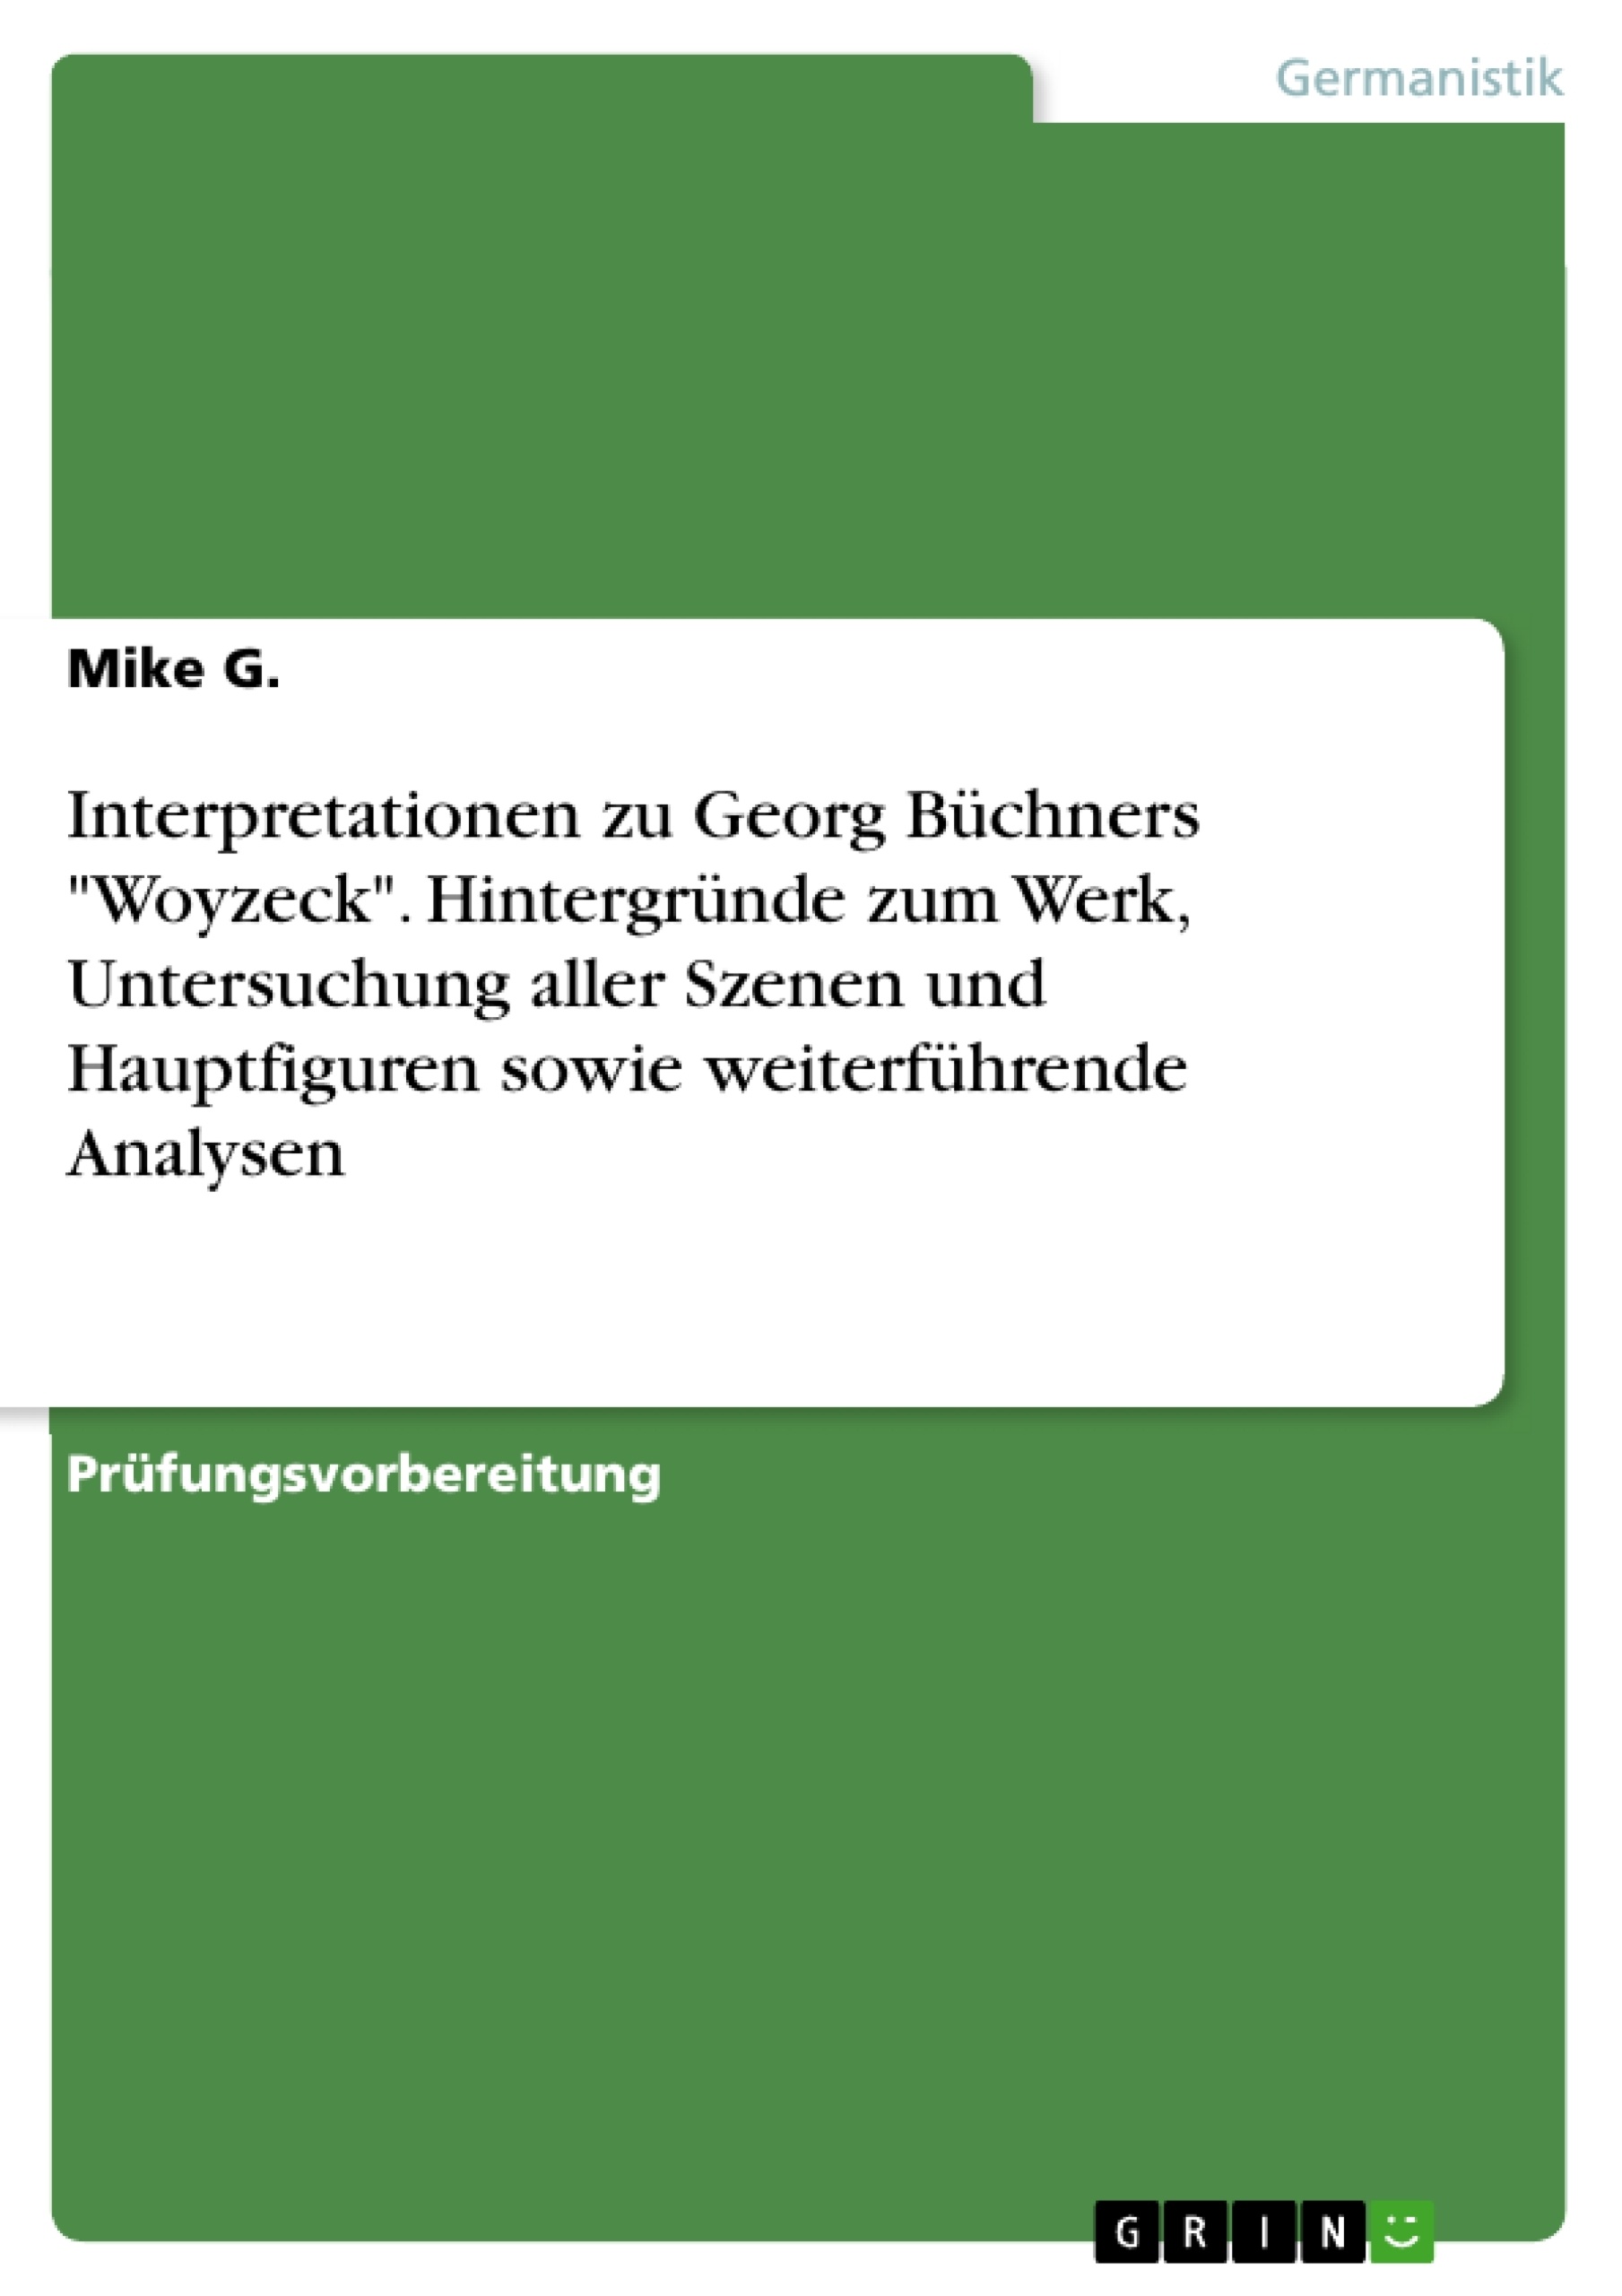 Titel: Interpretationen zu Georg Büchners "Woyzeck". Hintergründe zum Werk, Untersuchung aller Szenen und Hauptfiguren sowie weiterführende Analysen